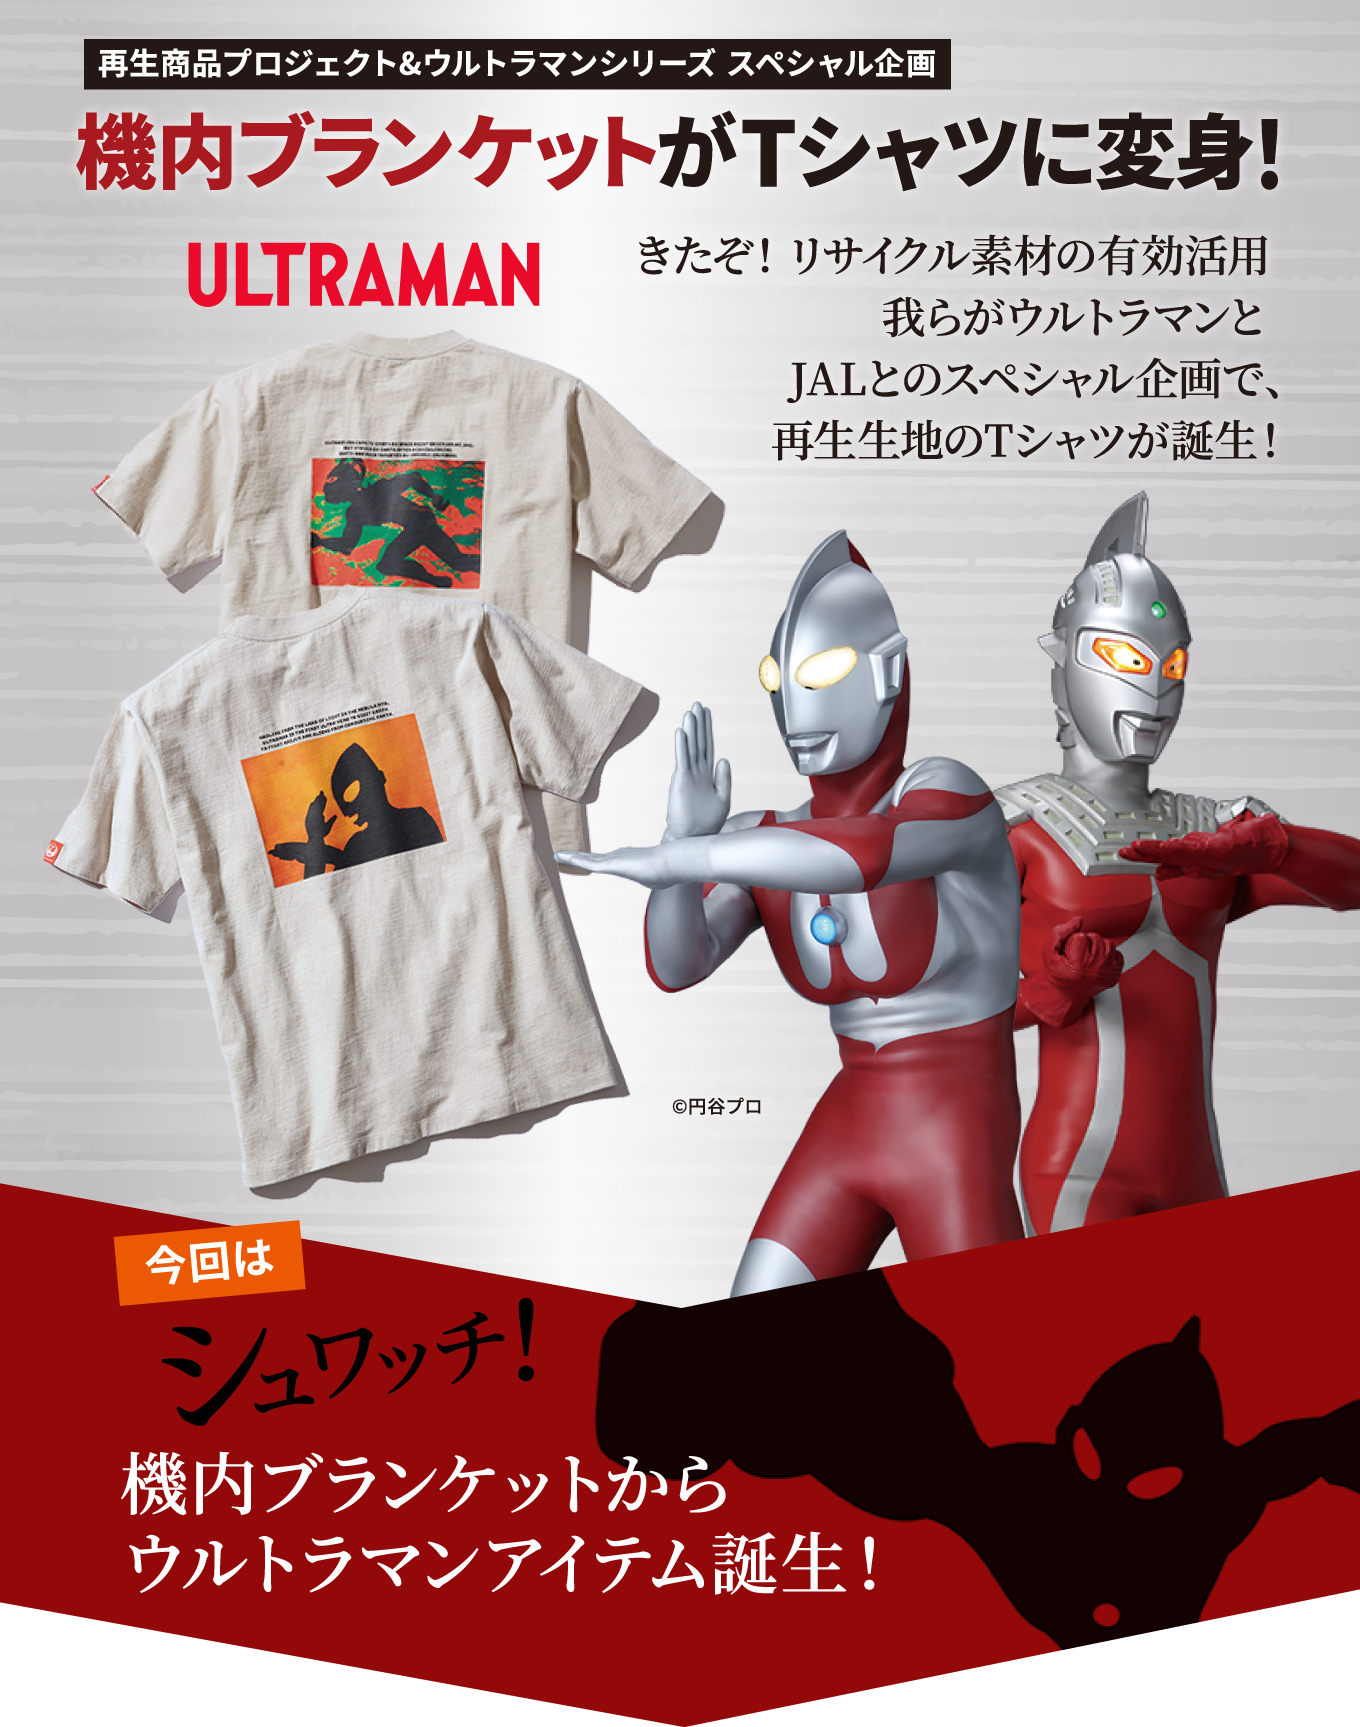 再生商品プロジェクト&ウルトラマンシリーズ スペシャル企画